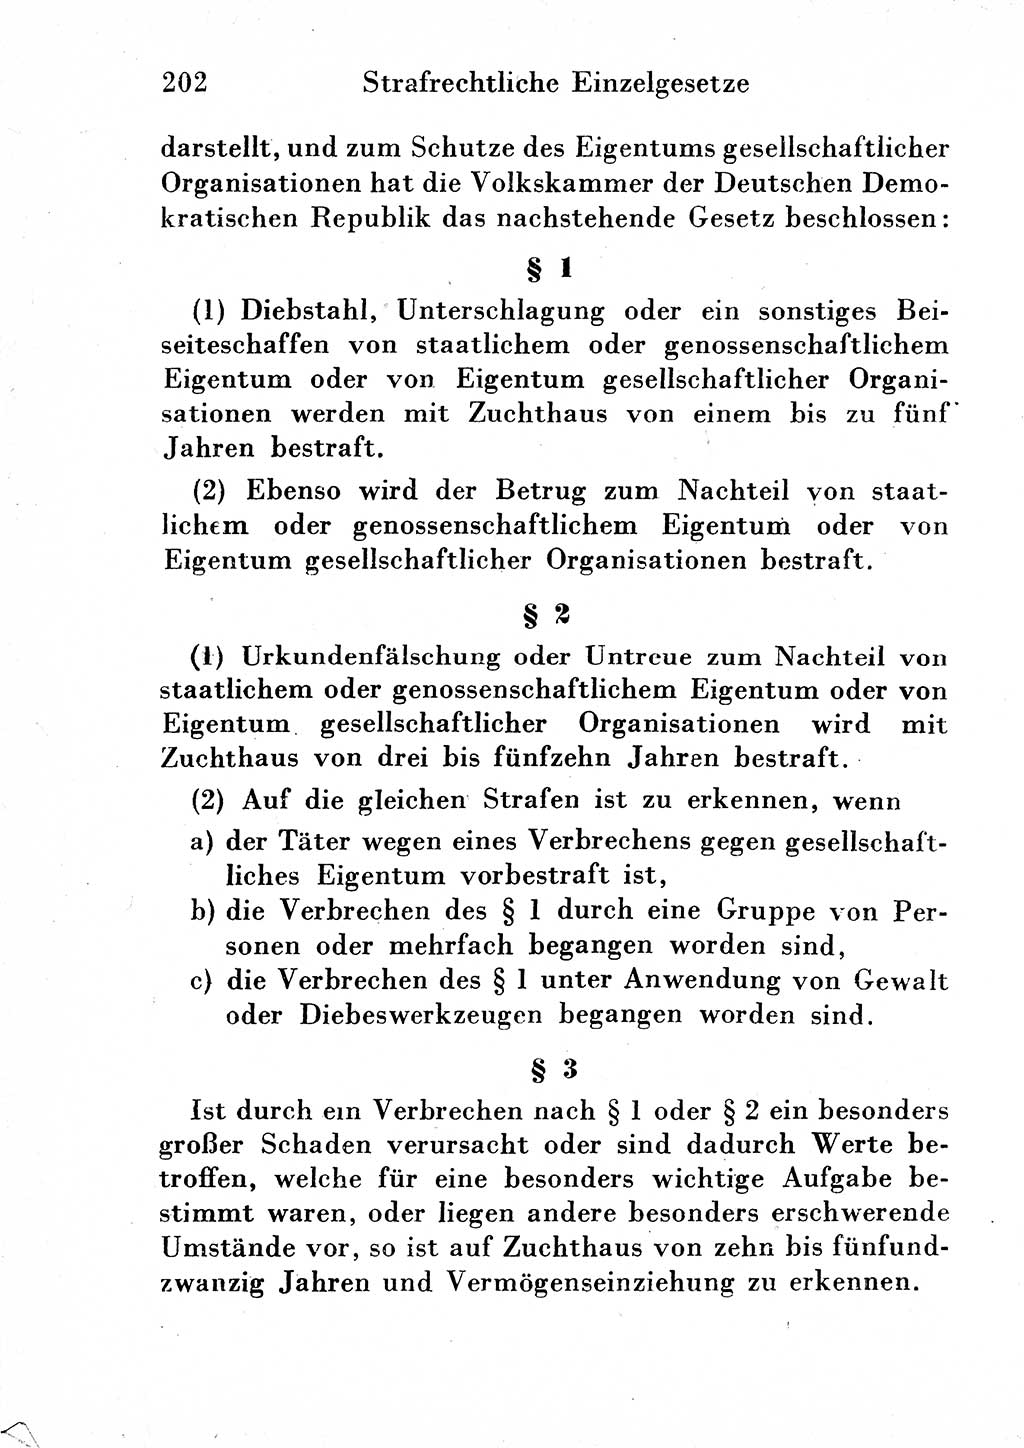 Strafgesetzbuch (StGB) und andere Strafgesetze [Deutsche Demokratische Republik (DDR)] 1954, Seite 202 (StGB Strafges. DDR 1954, S. 202)